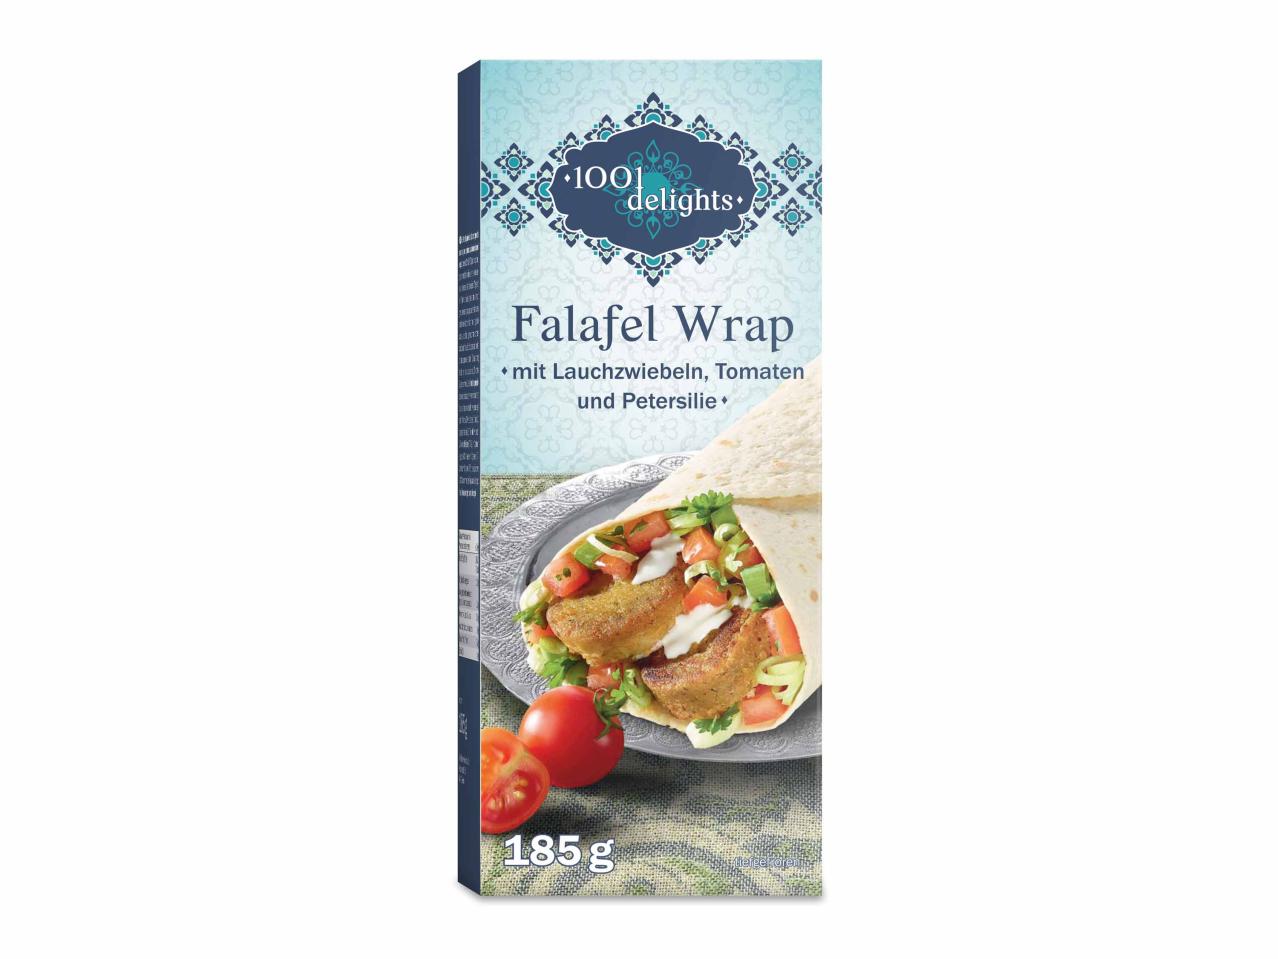 Falafel wrap